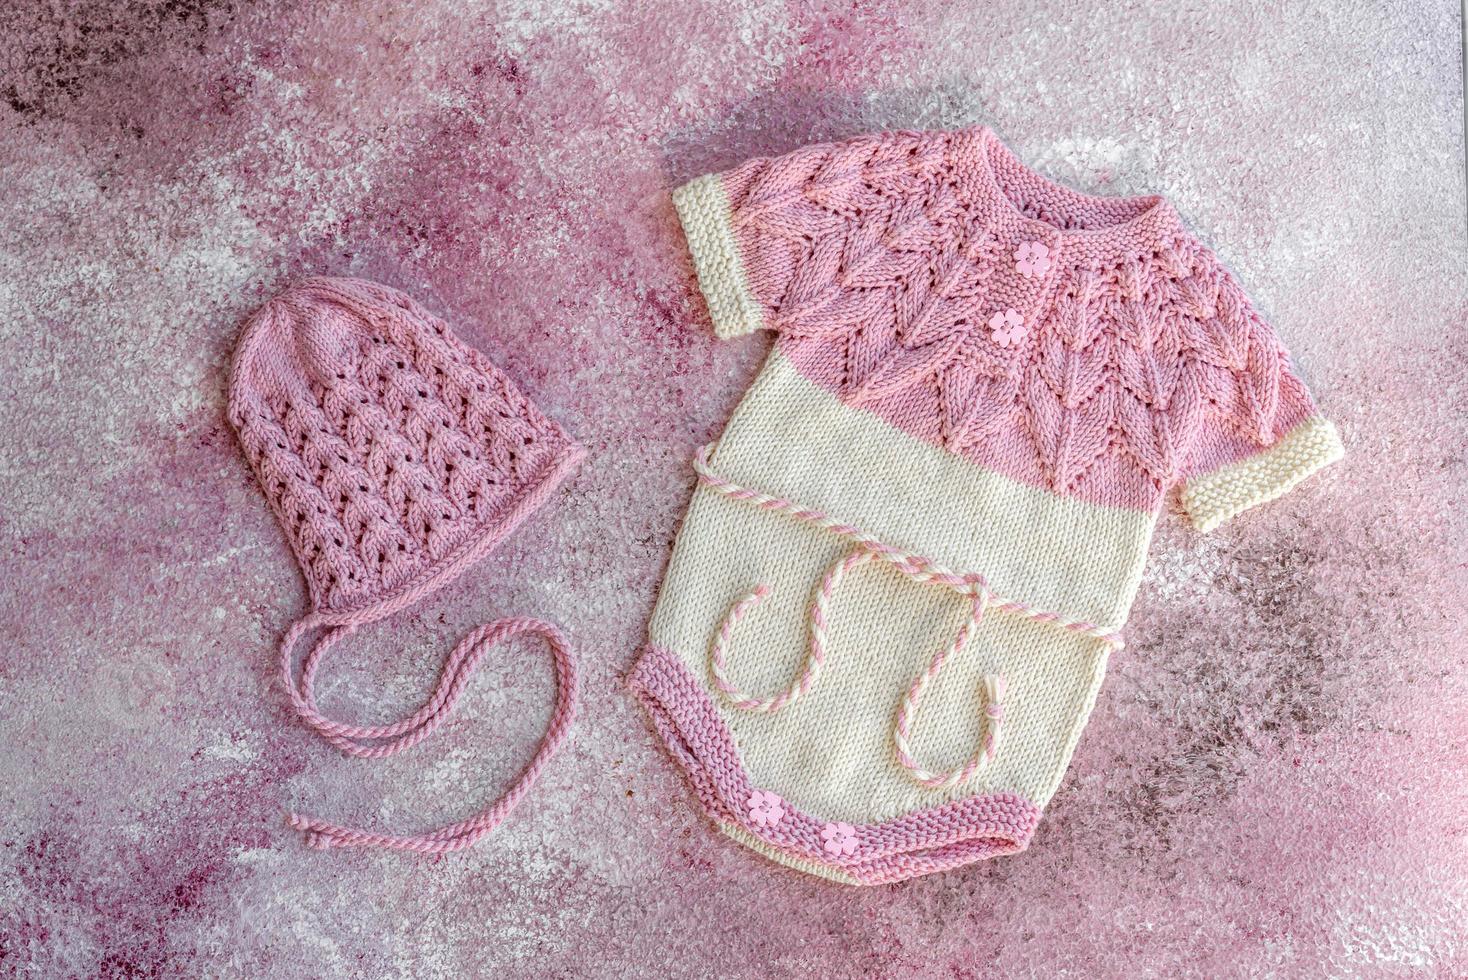 roupas de malha feitas de fios de lã natural para um bebê recém-nascido foto